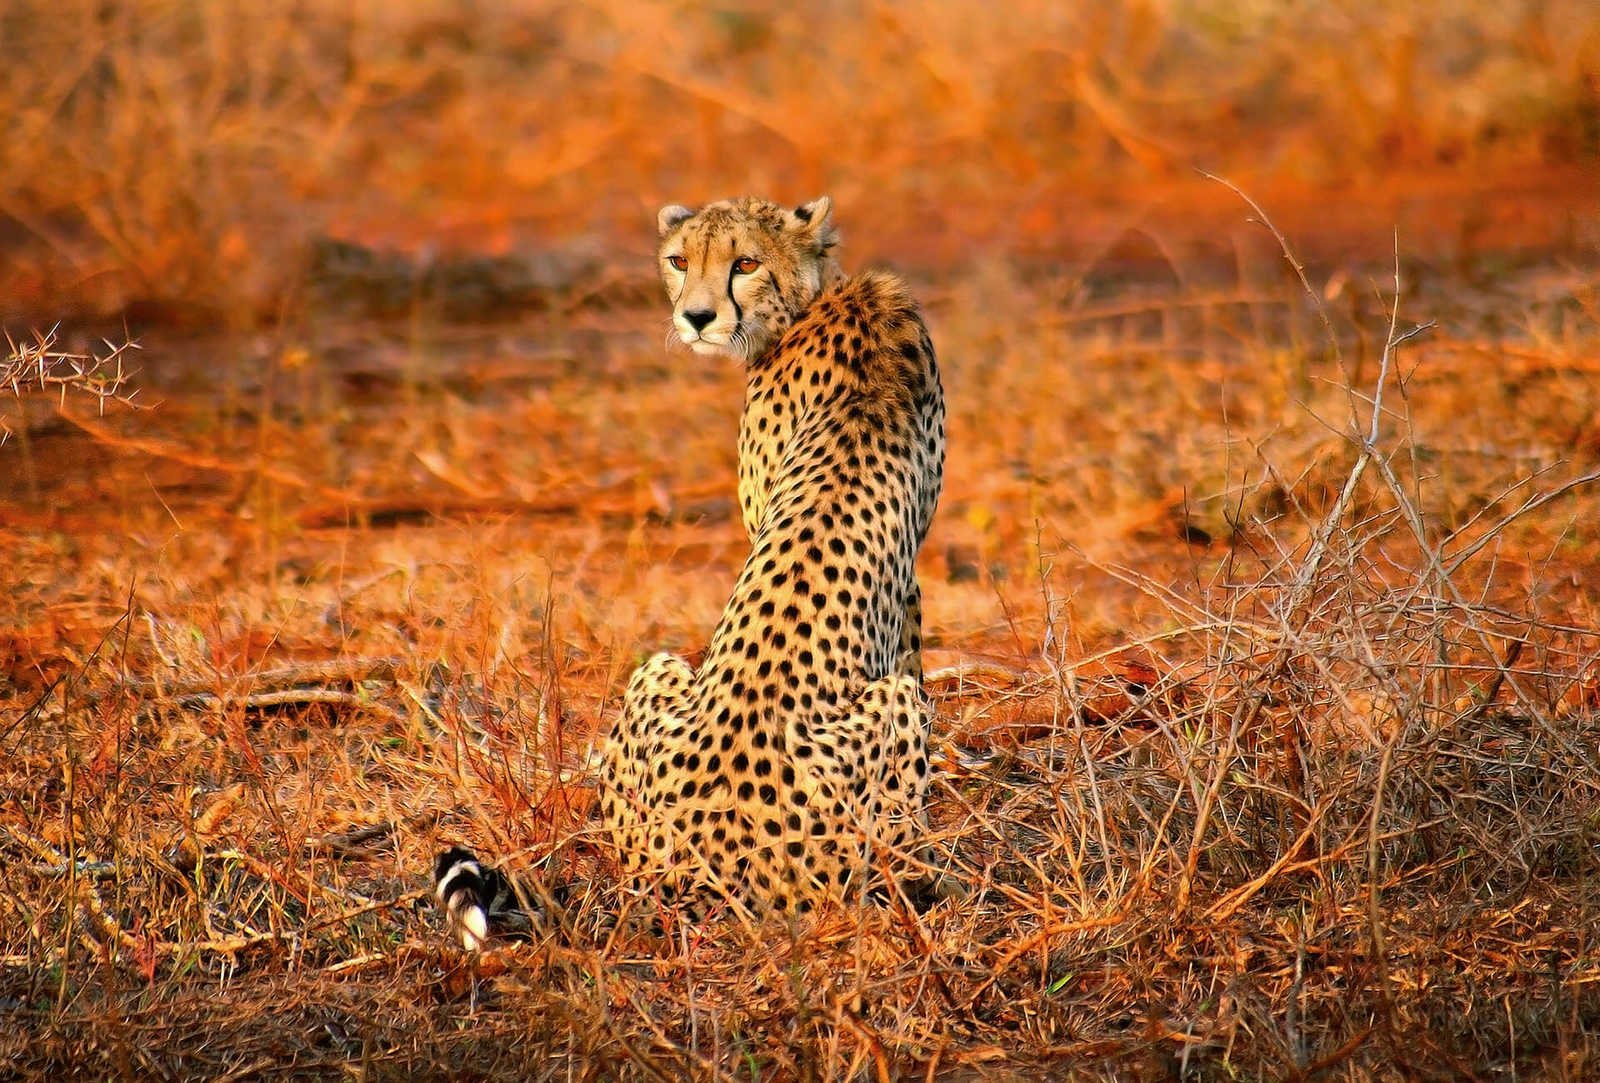         Fototapete Leopard in Natur – Gelb, Orange, Schwarz
    